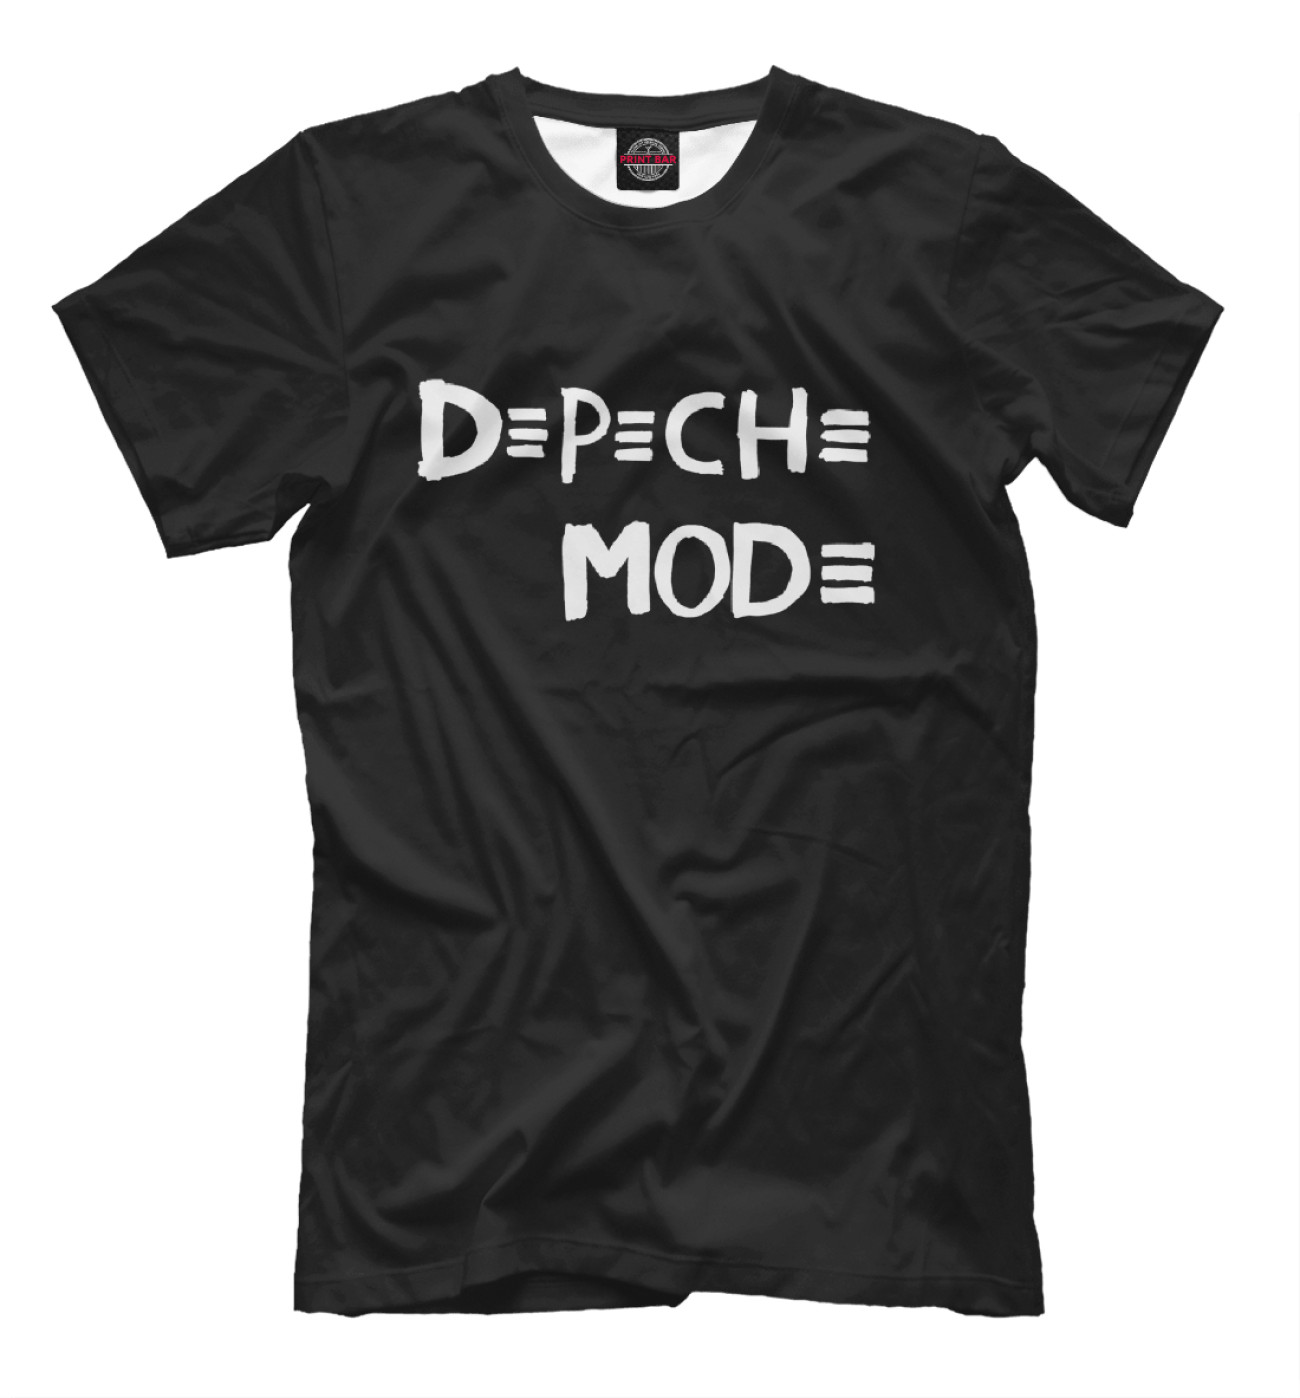 Мужская Футболка Depeche Mode, артикул: DPM-709535-fut-2